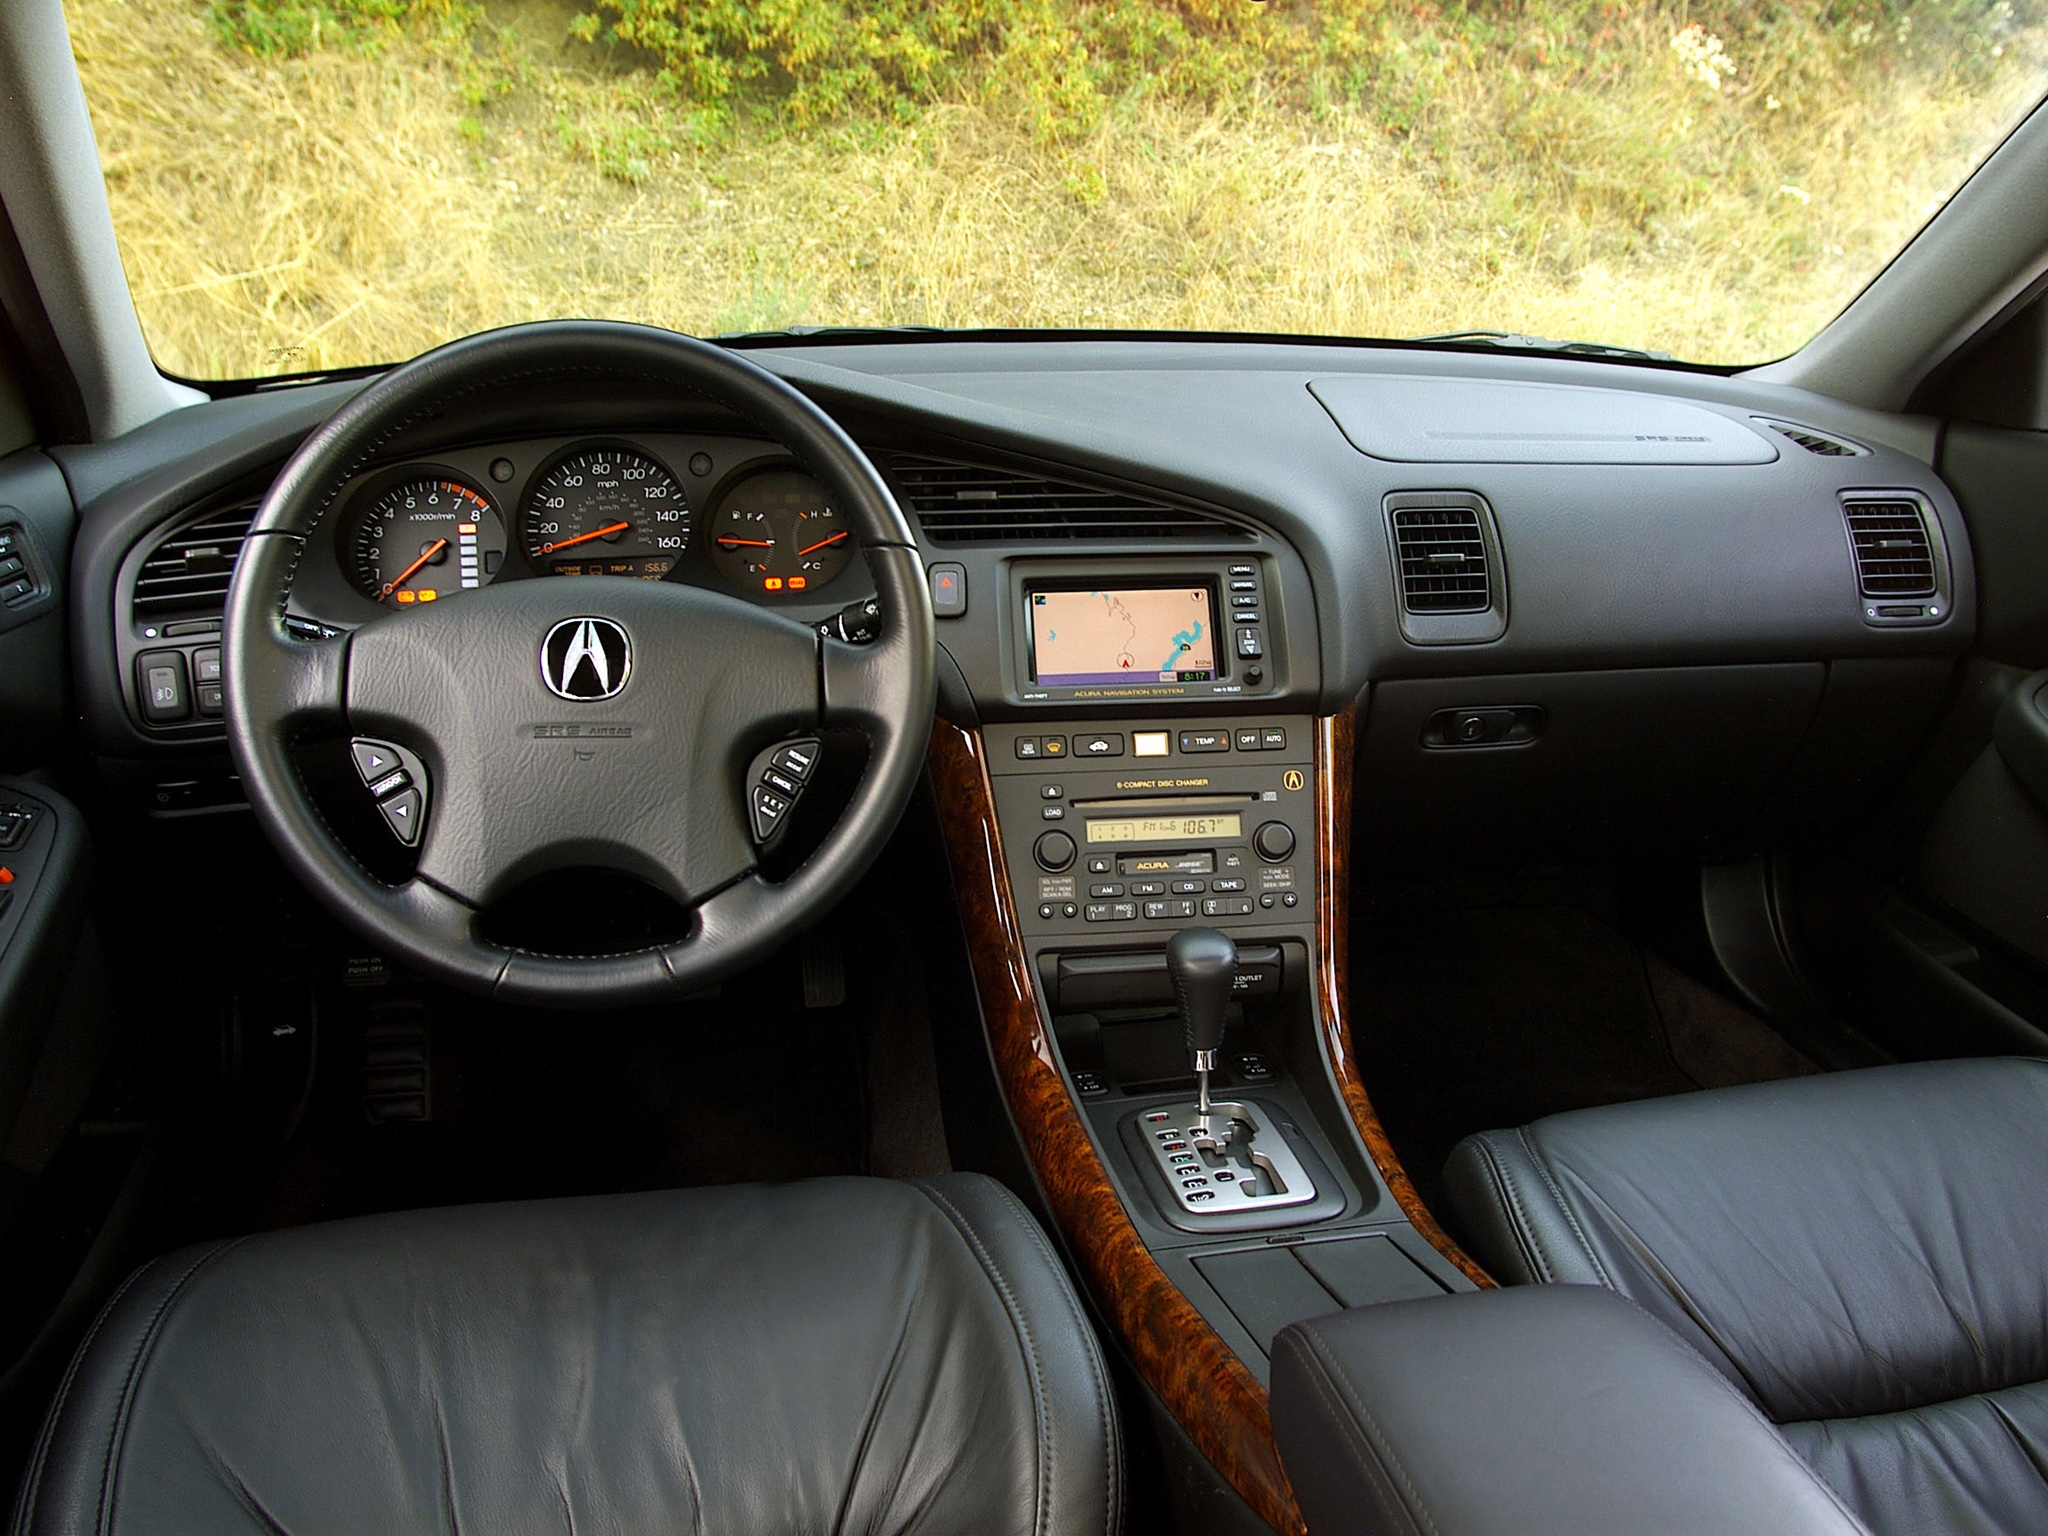 speedometer, grass, acura, interior, cars, steering wheel, rudder, salon, tl, 2002